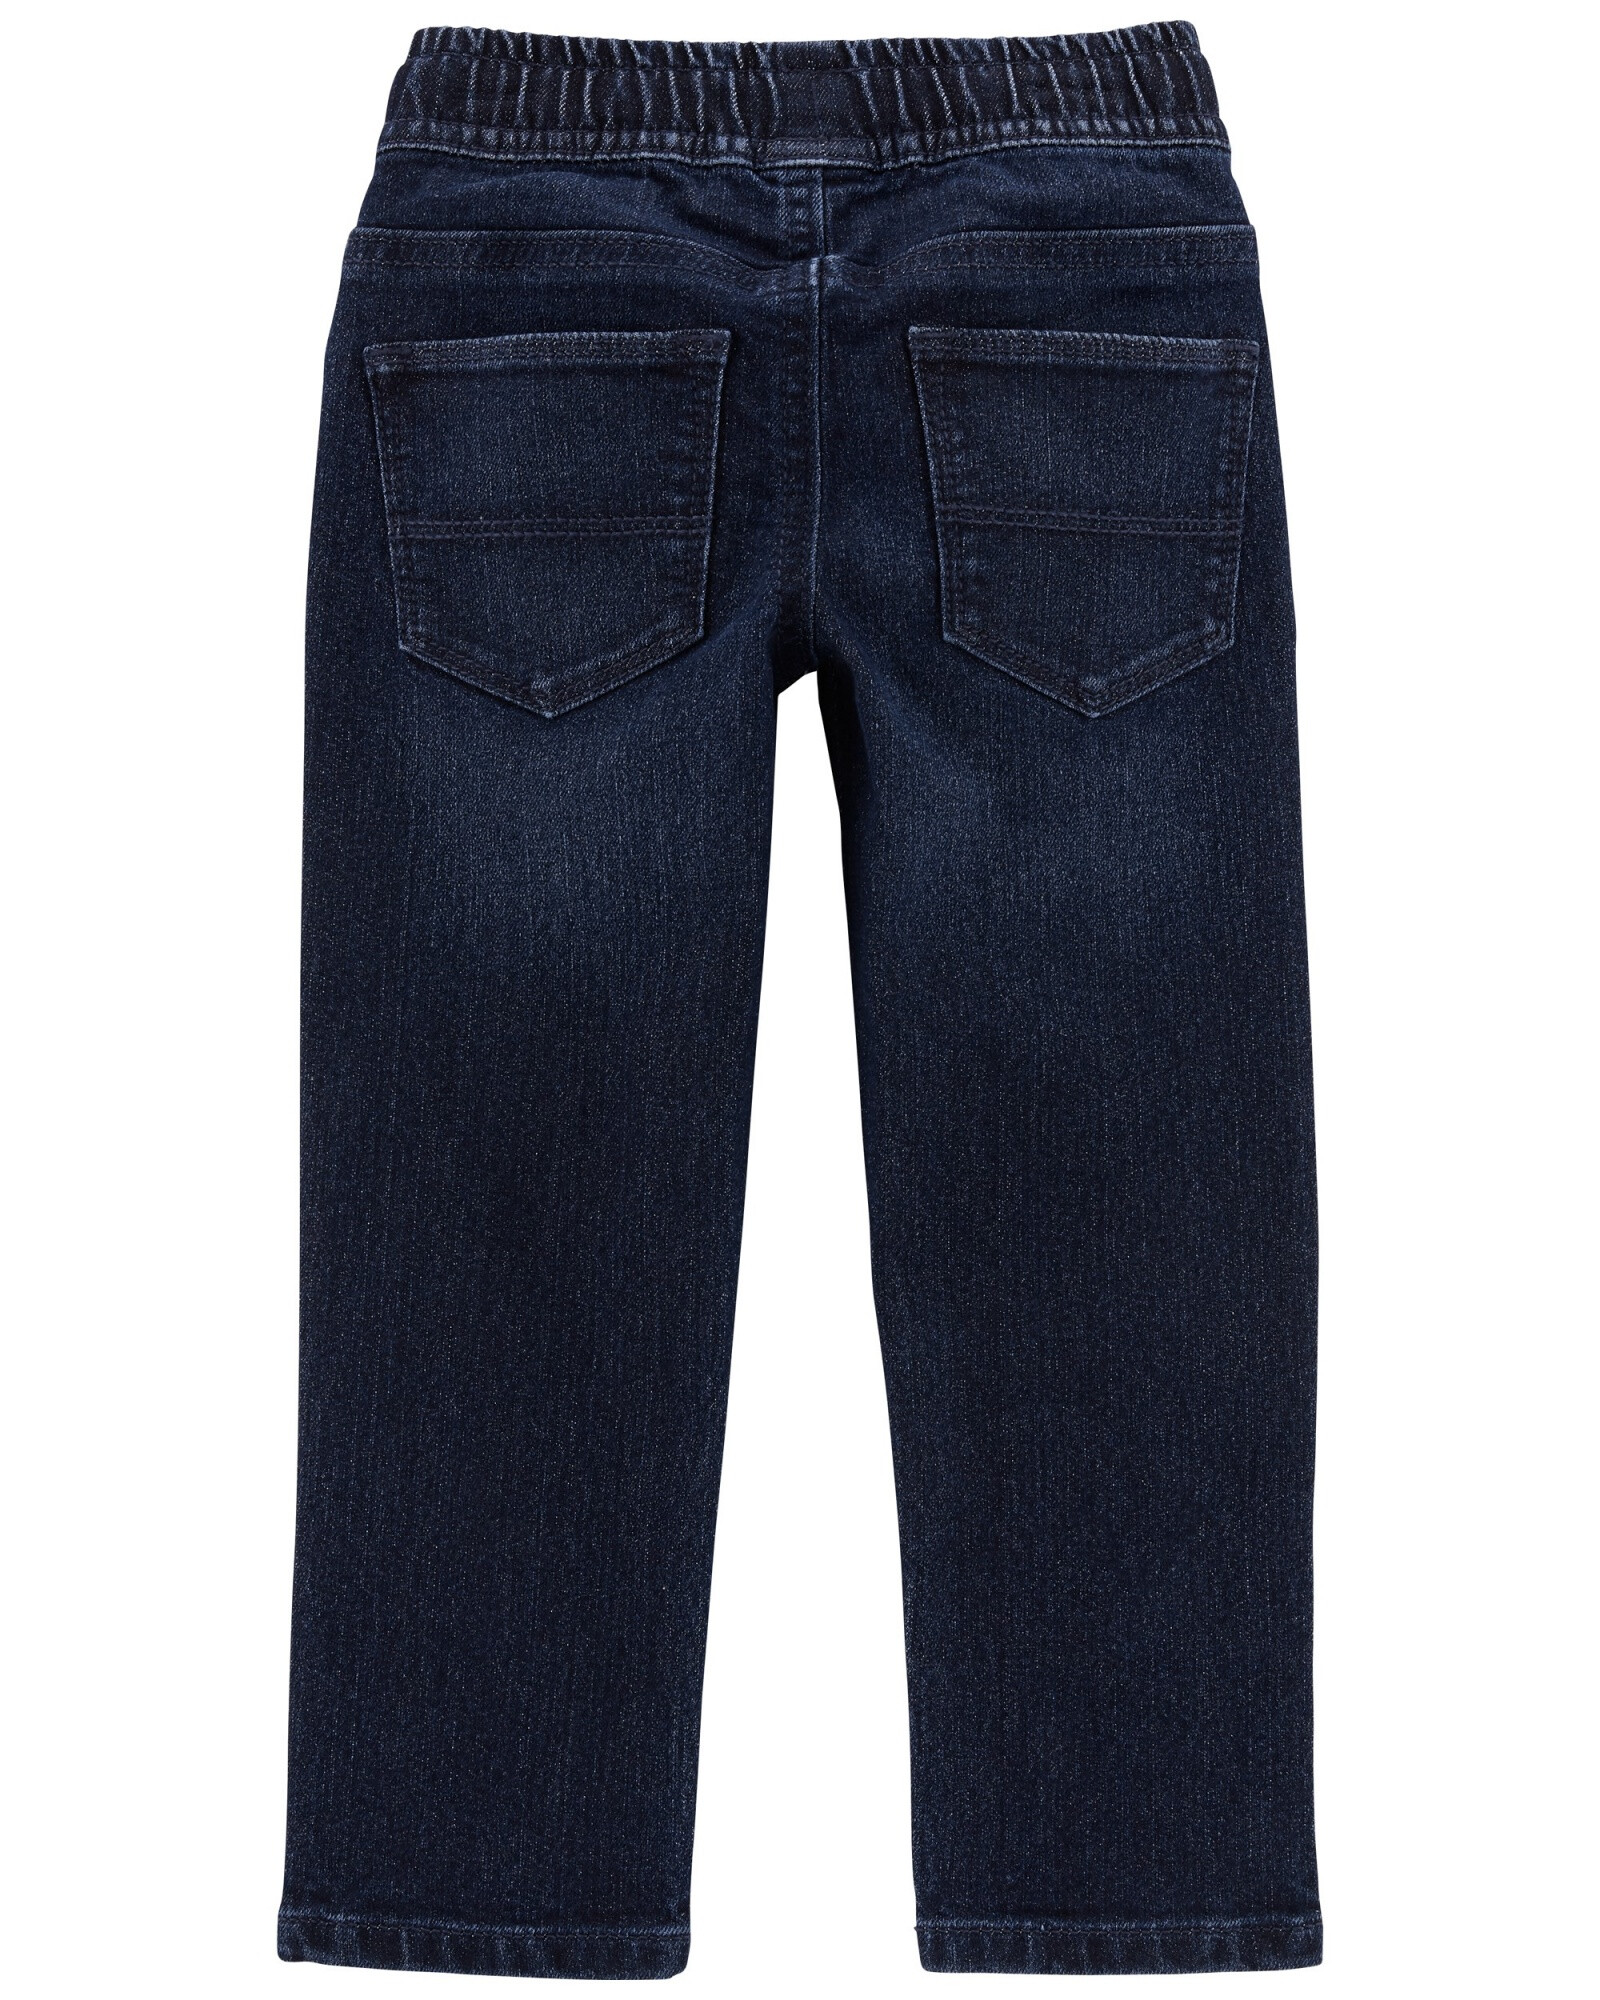 Pantalón jean cónico. Talles 2-5T Sin color